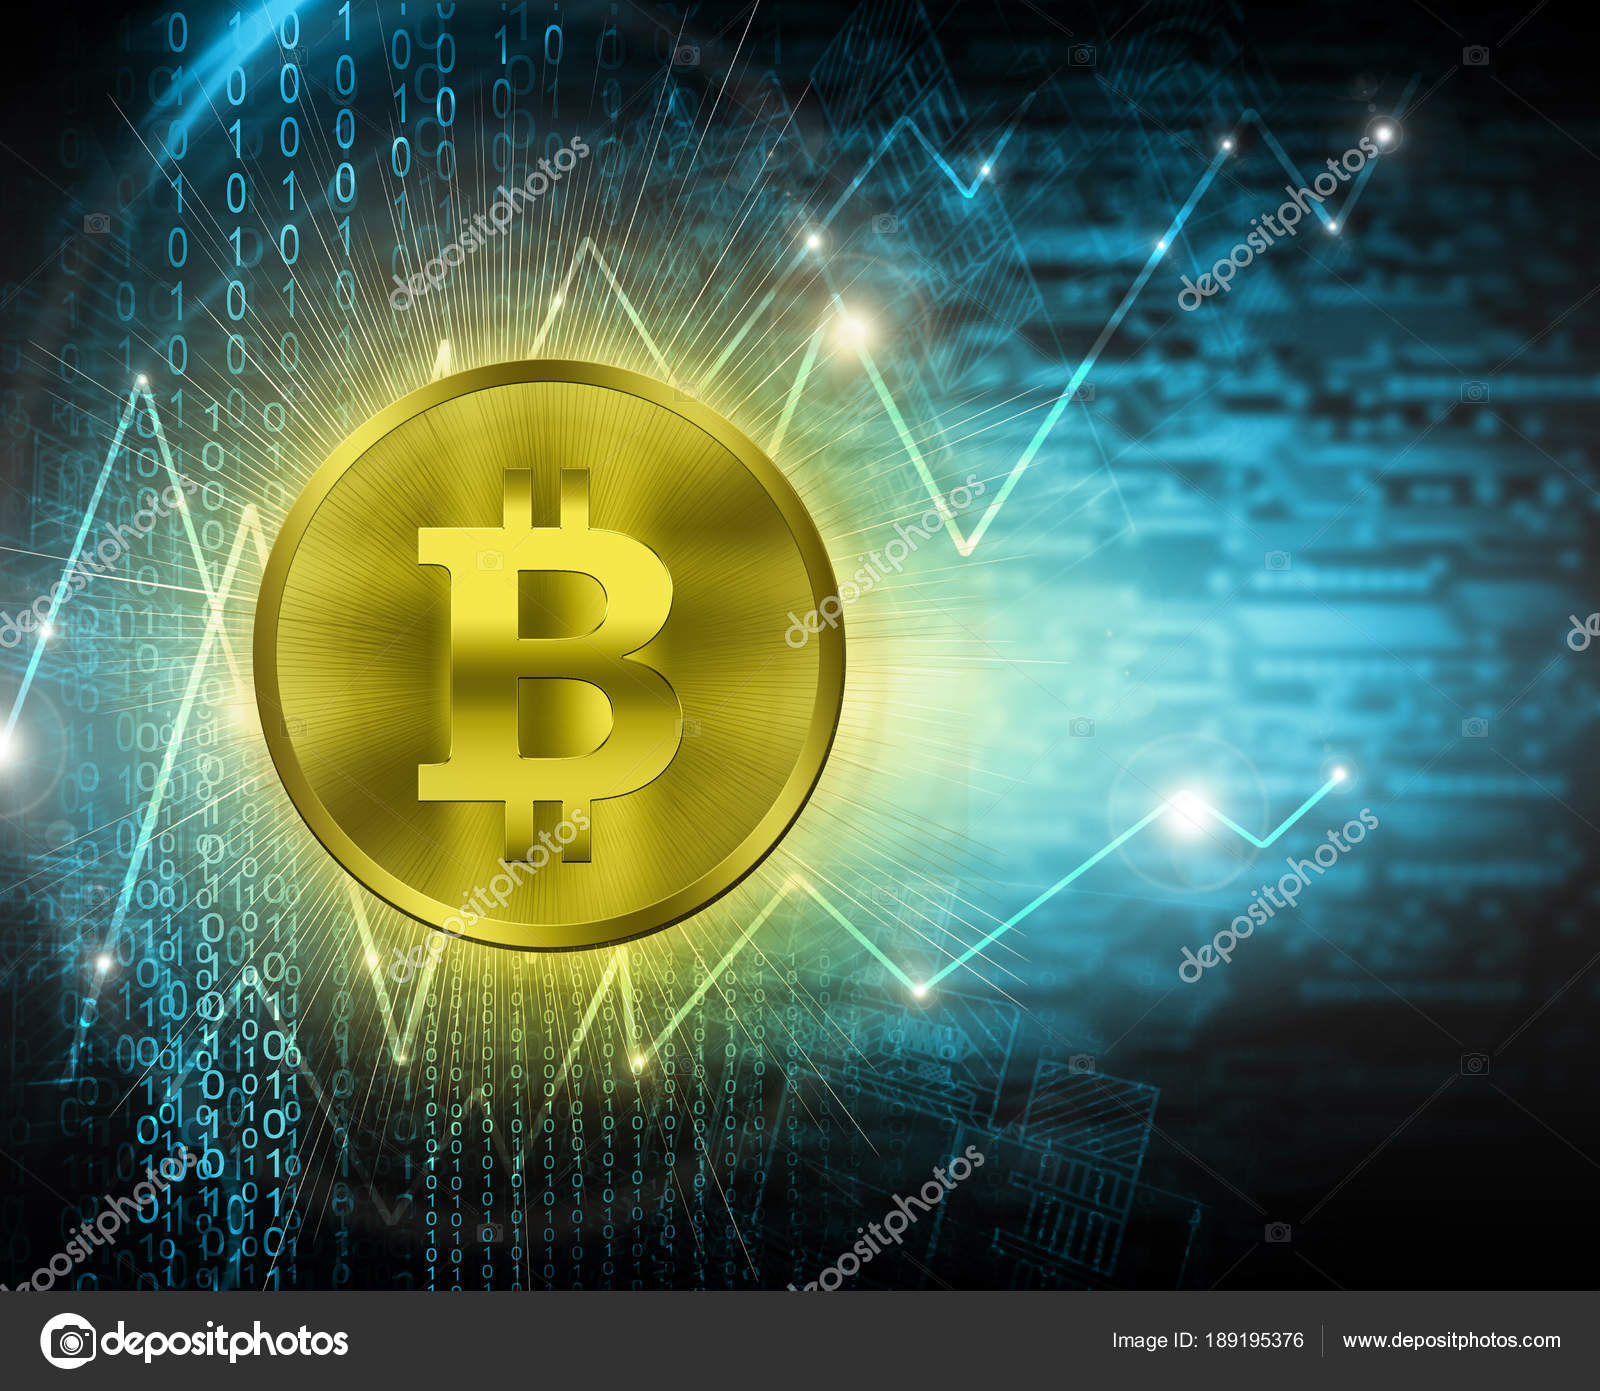 Digital money bitcoin bitcoin dead bitcoin cash